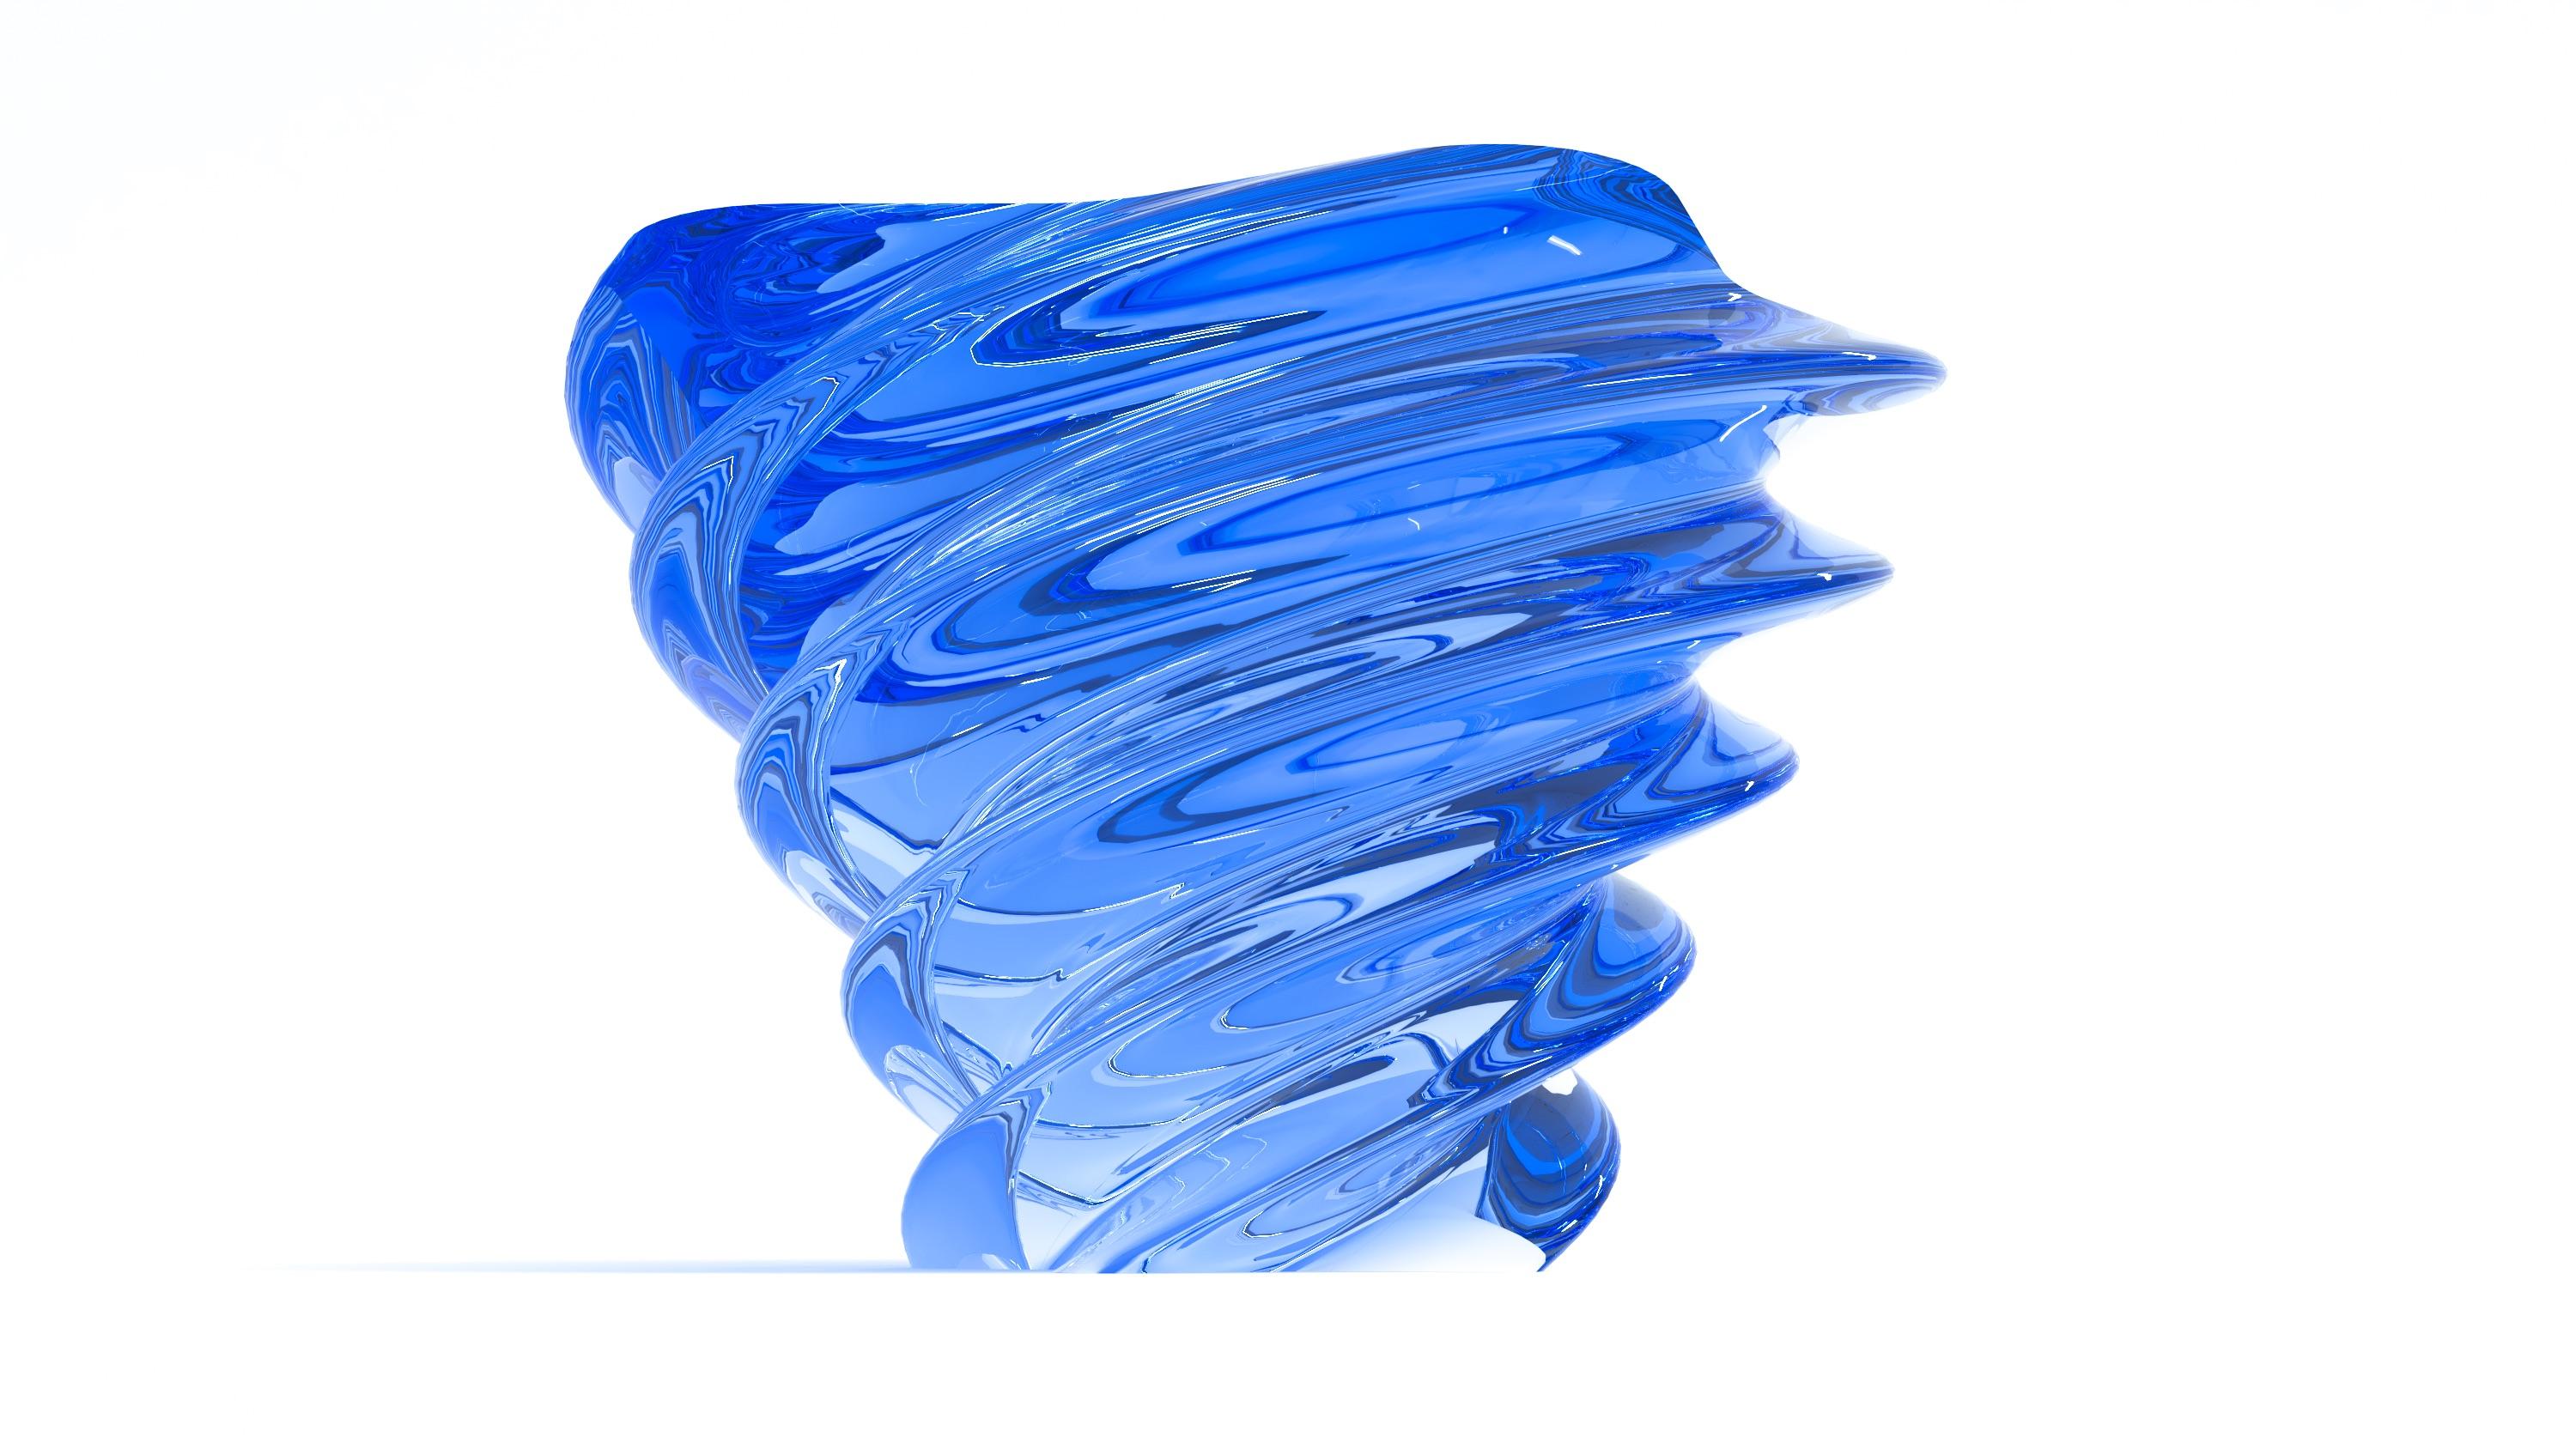 Table basse modèle Torchon entièrement en plexiglas coloré conçue par Studio Superego pour Superego Editions.
Edition limitée à 9 pièces.

Biographie :
Les éditions Superego sont nées en 2006, menant une activité constante de recherche dans le